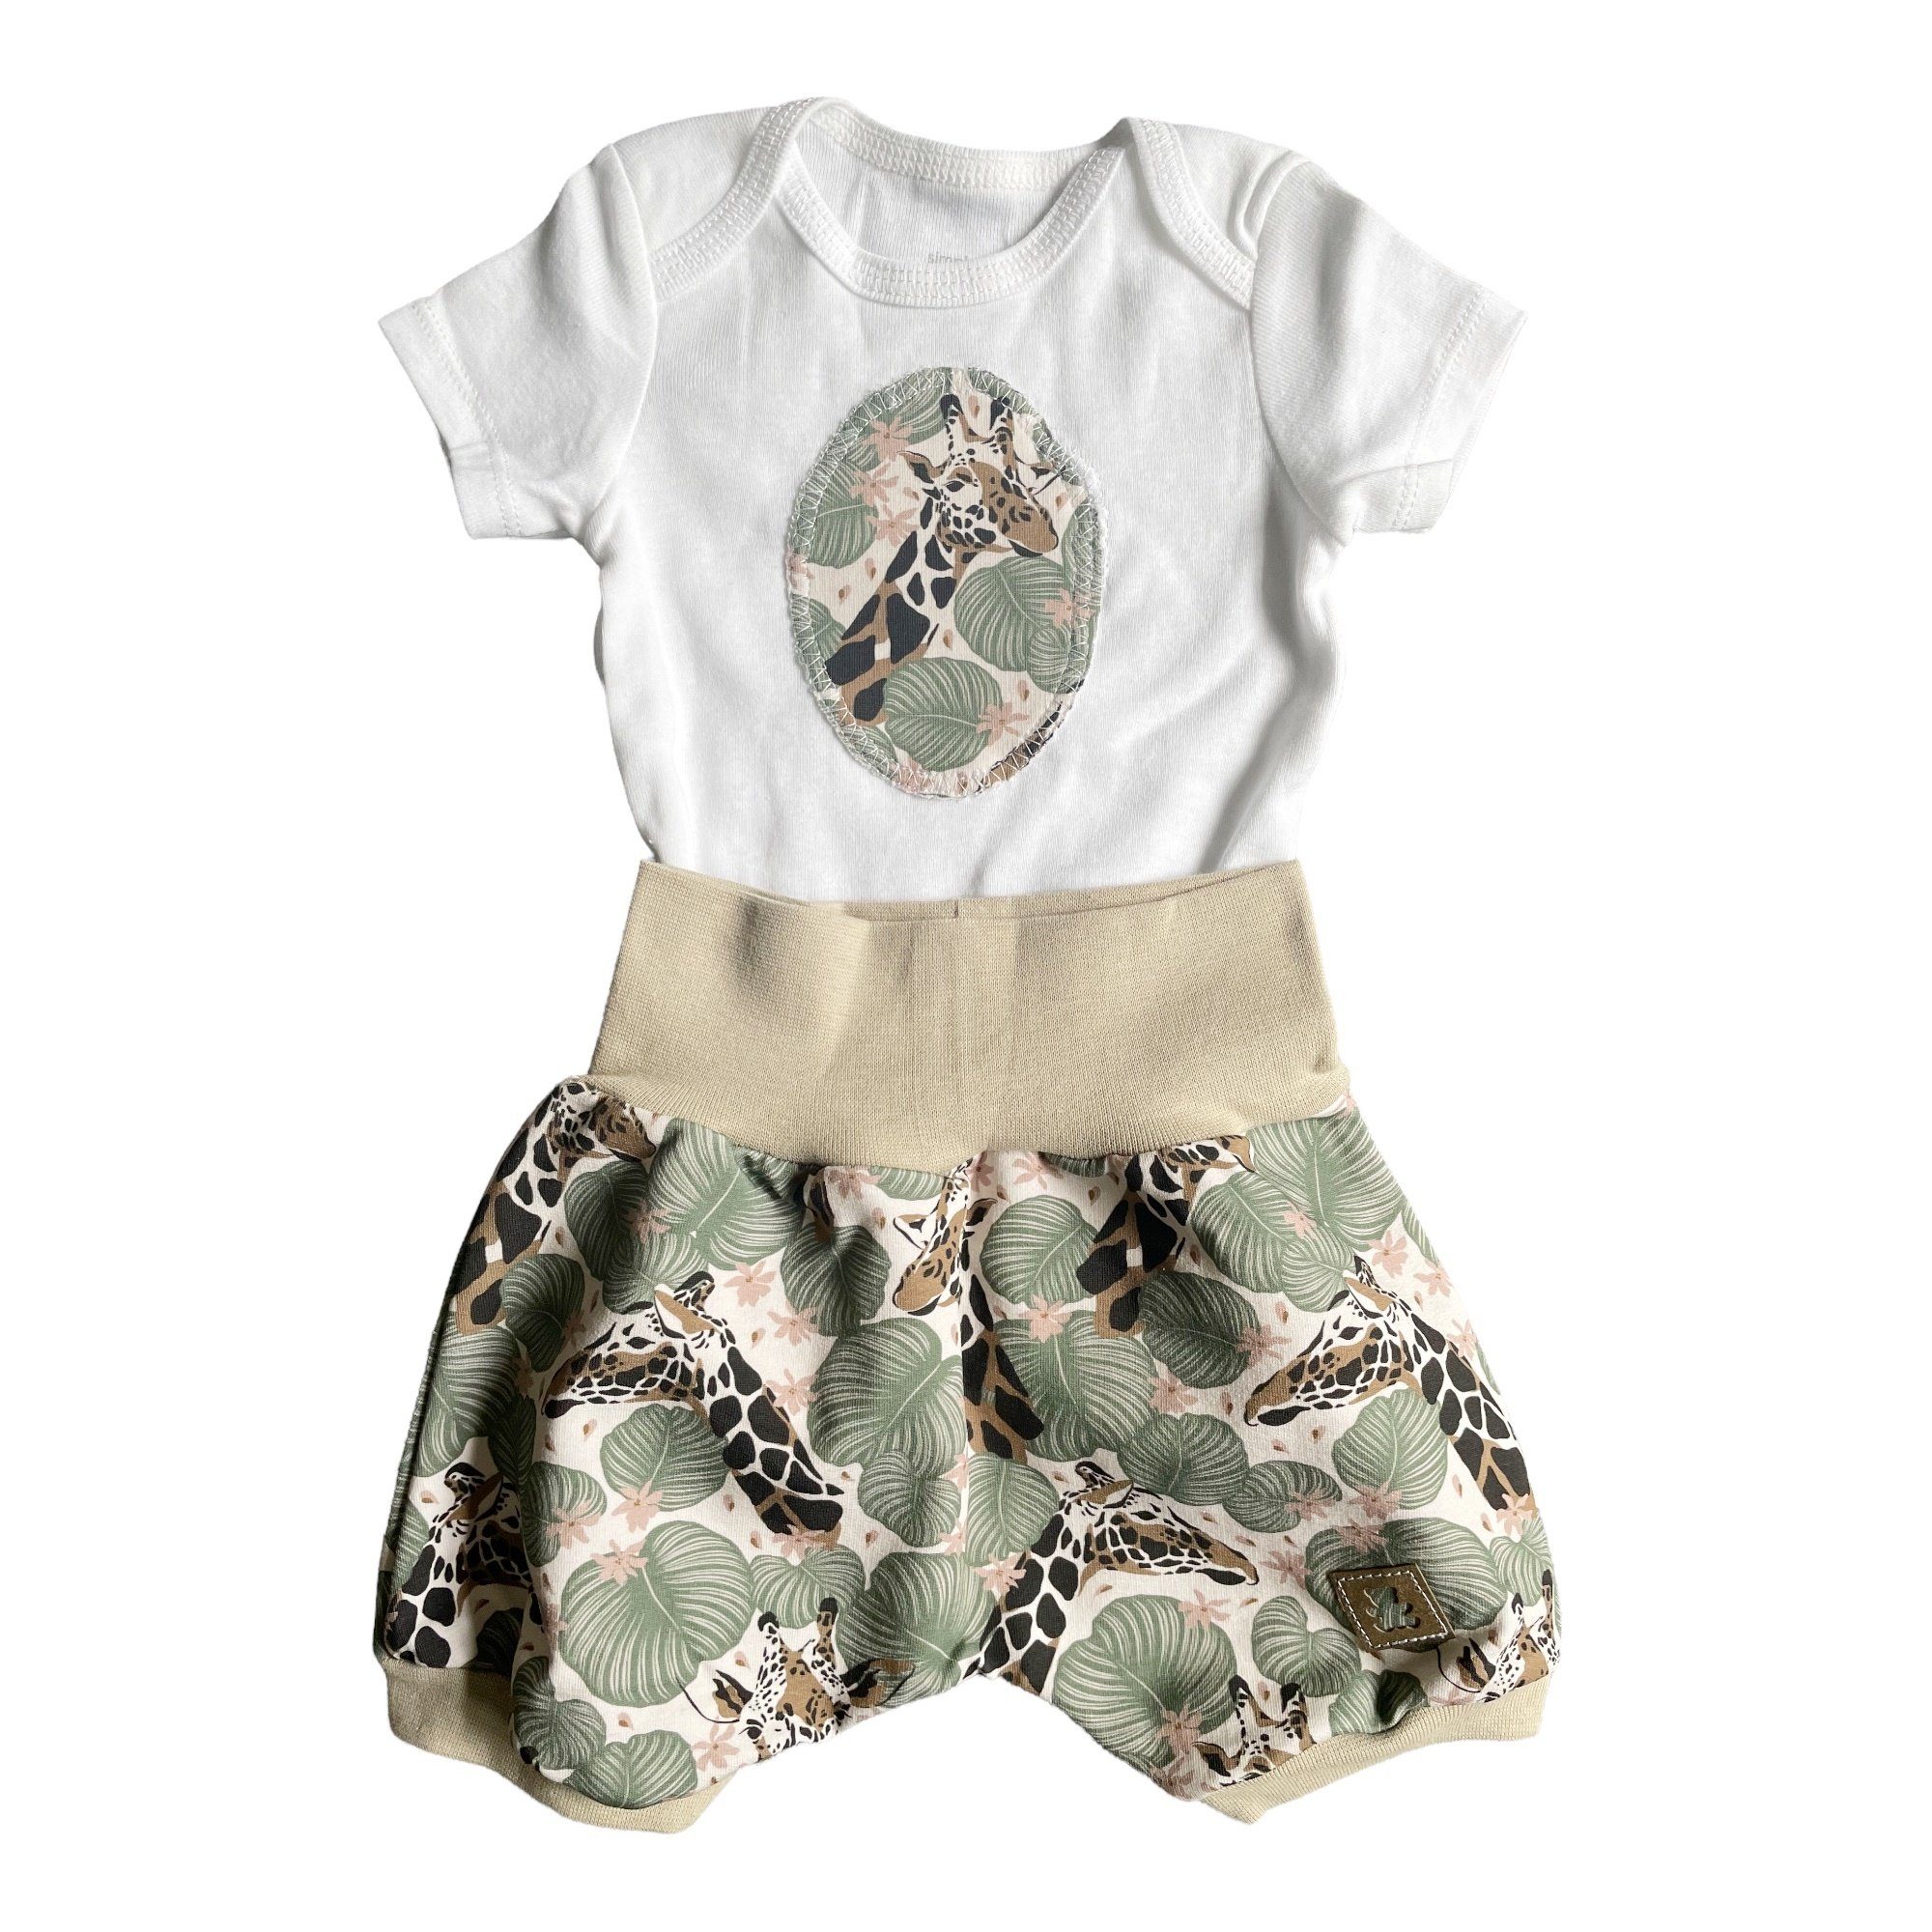 niedlichem Set Baby (2 Kinder- Body Design teilig) "Giraffe" Shorts grün/beige kennydoo & mit